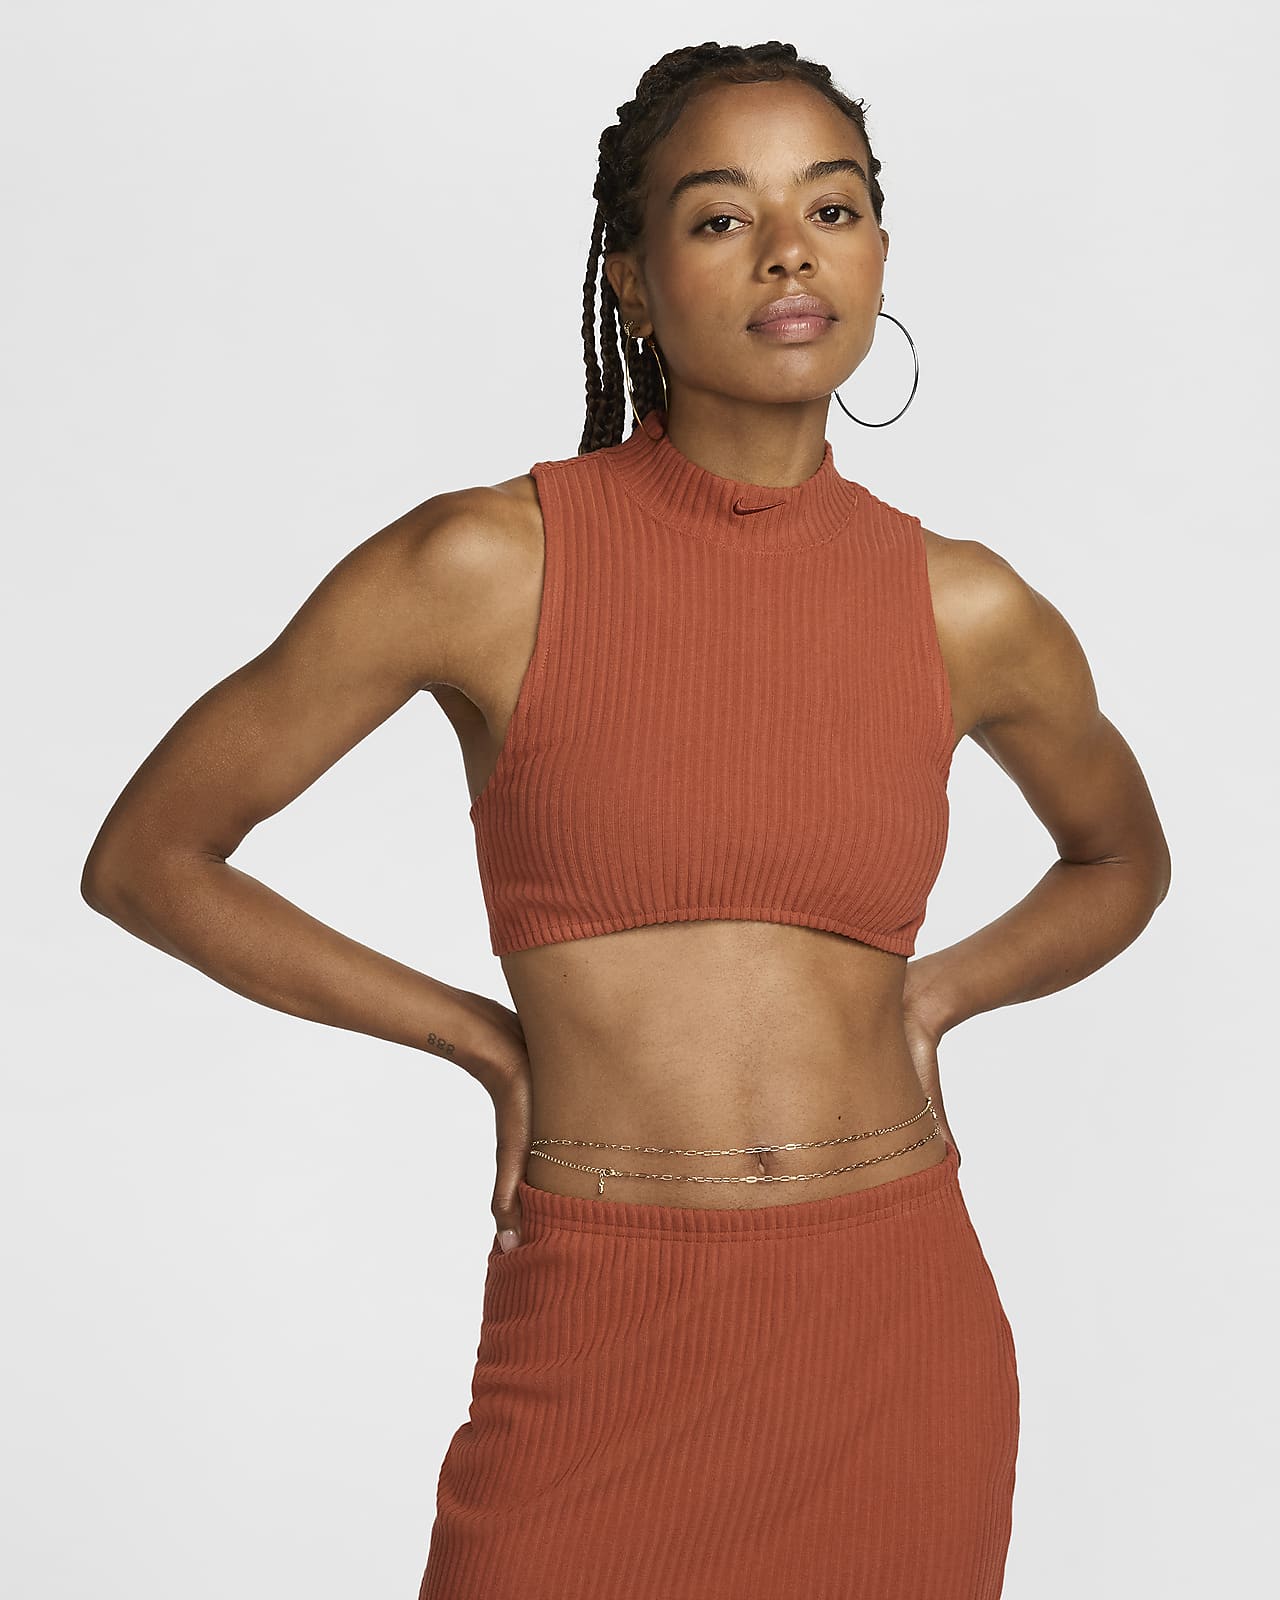 Γυναικείο crop tank top σε πολύ εφαρμοστή γραμμή με ψηλό γιακά και ριμπ ύφανση Nike Sportswear Chill Knit